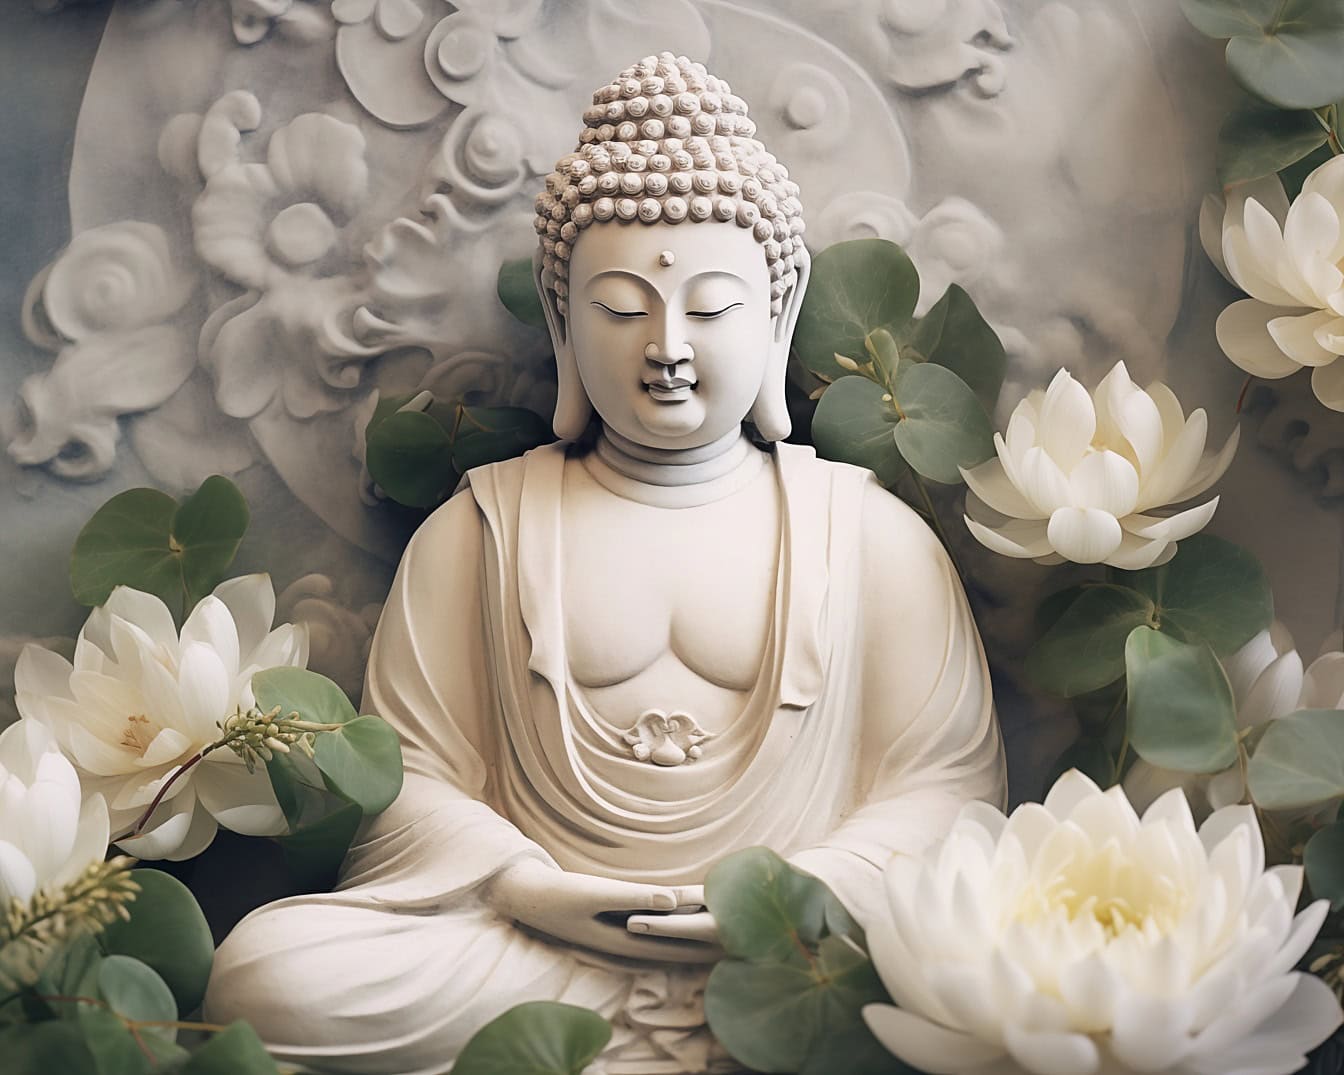 Άγαλμα του Βούδα σε υπερβατικό Διαλογισμό περιτριγυρισμένο από άνθη λωτού που απεικονίζει το Ζεν ως πνευματική φιλοσοφία